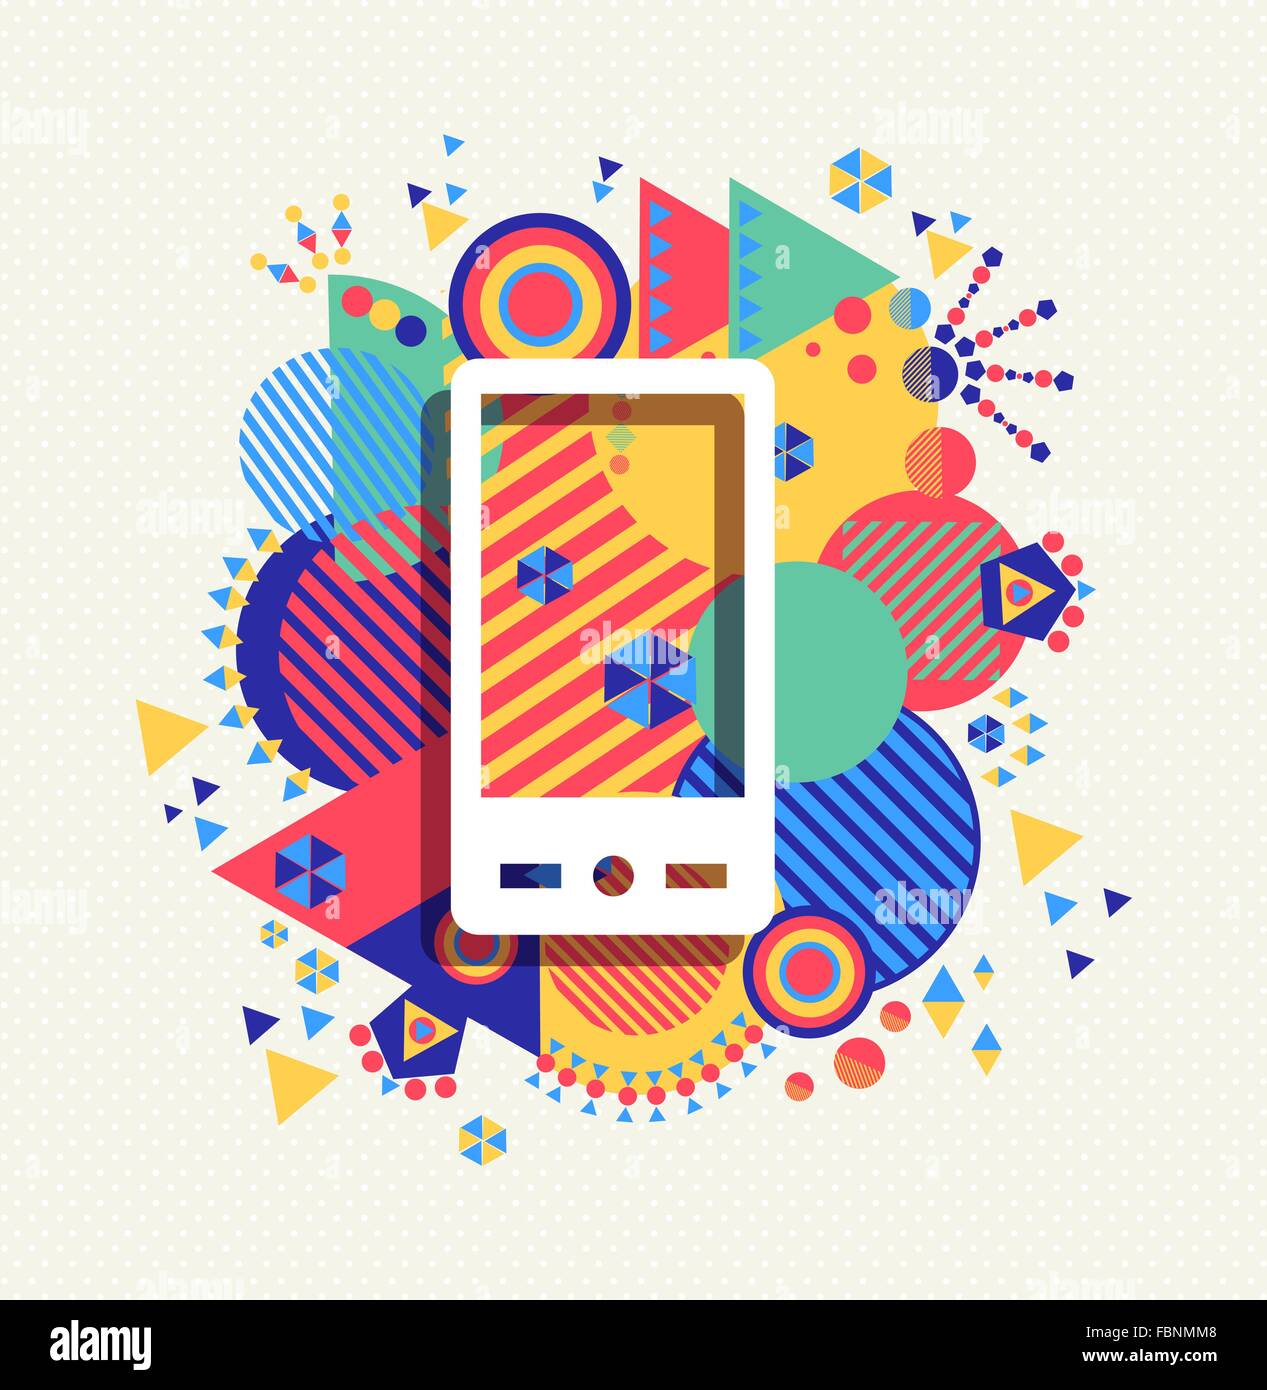 Icône de téléphone portable Mobile app affiche la géométrie dynamique avec des formes arrière-plan. Social media concept. EPS10 Illustration de Vecteur